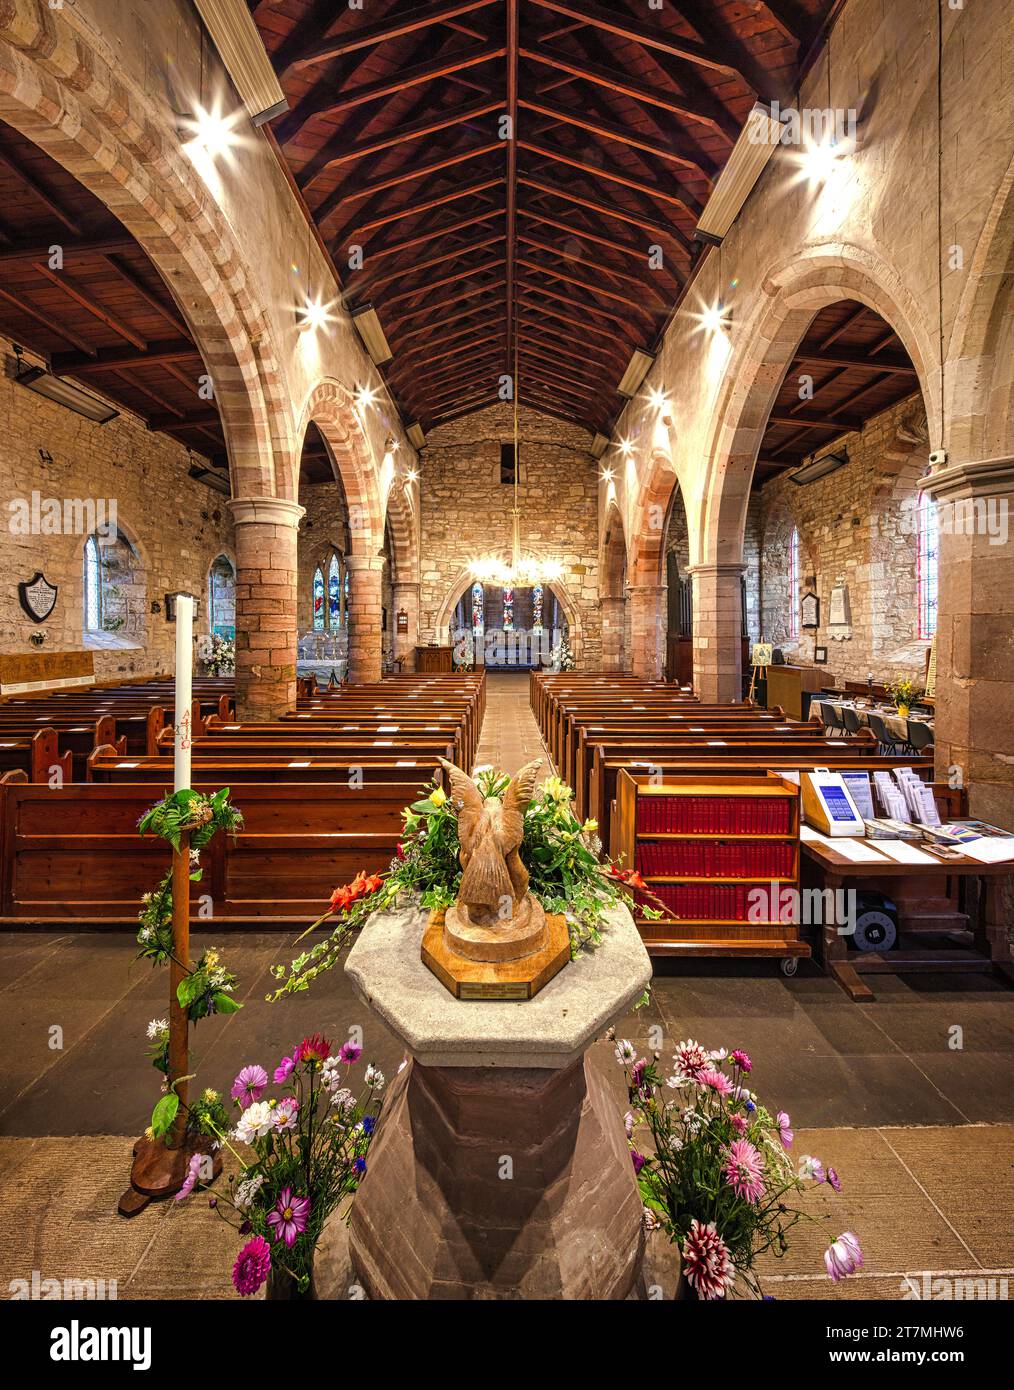 Vue intérieure de l'église Sainte Marie la Vierge sur l'île Sainte de Lindisfarne dans le Northumberland, Angleterre, Royaume-Uni Banque D'Images